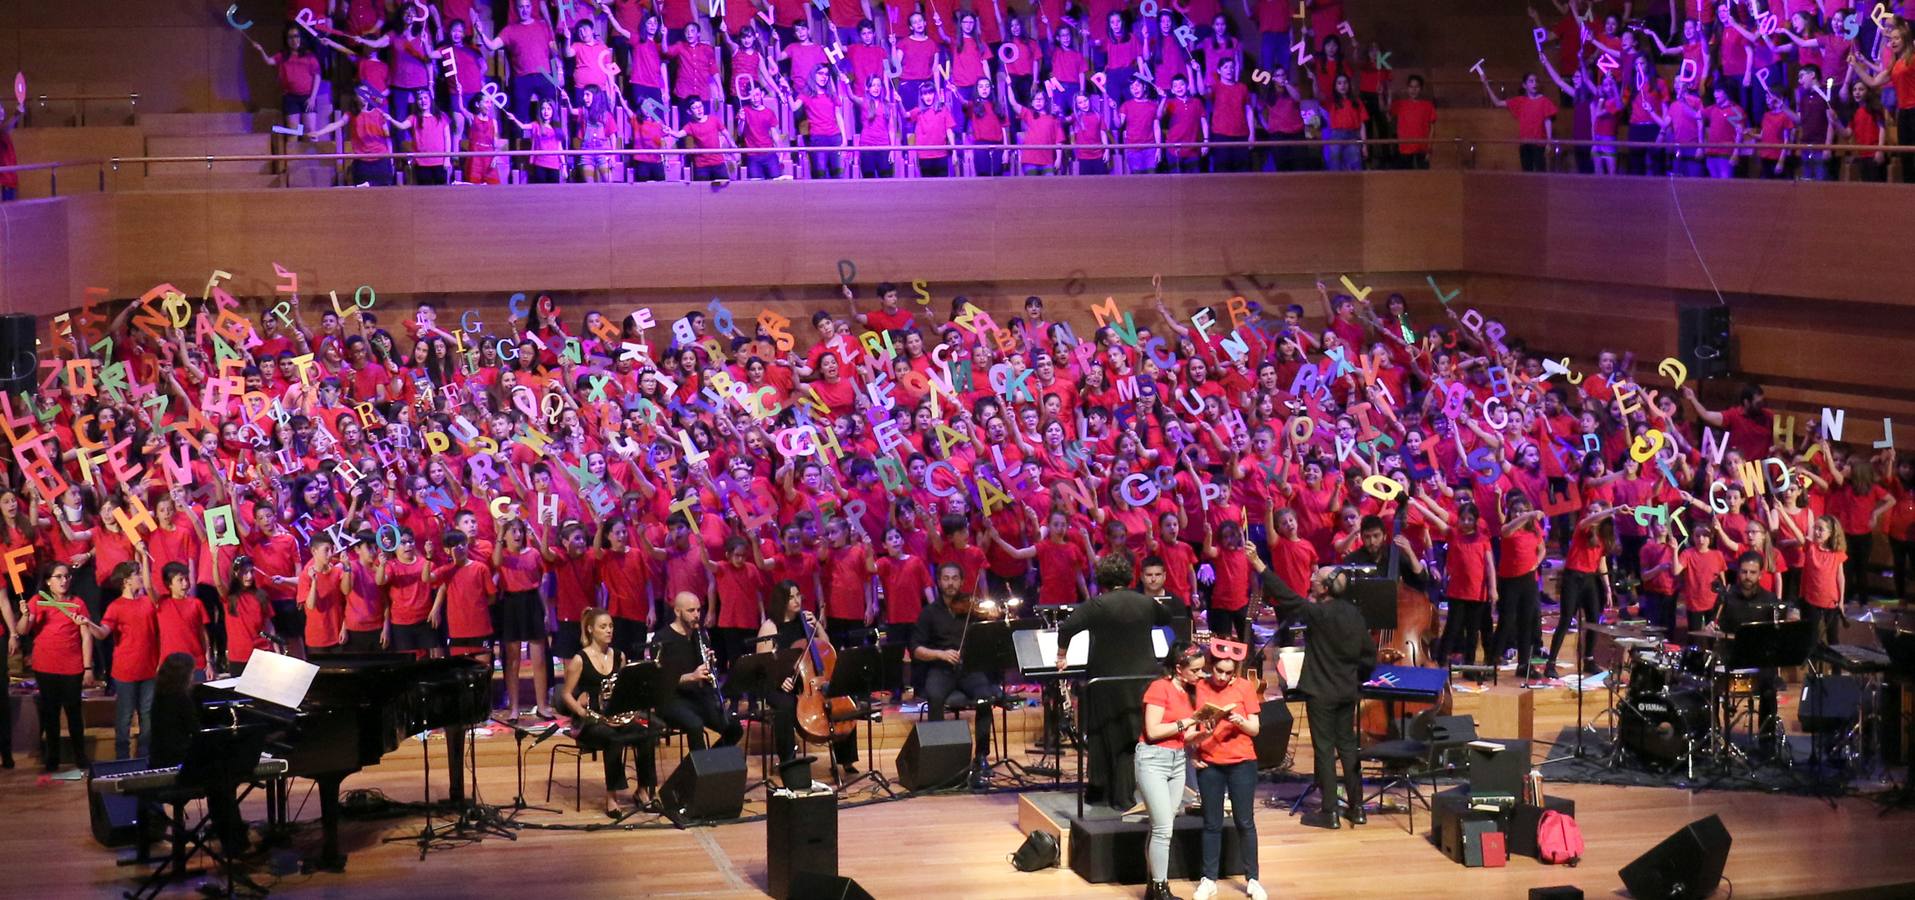 La novena edición del proyecto musical reúne a cerca de 3.600 escolares en torno a la cantata de Eduard Iniesta que celebra el centenario del poeta catalán